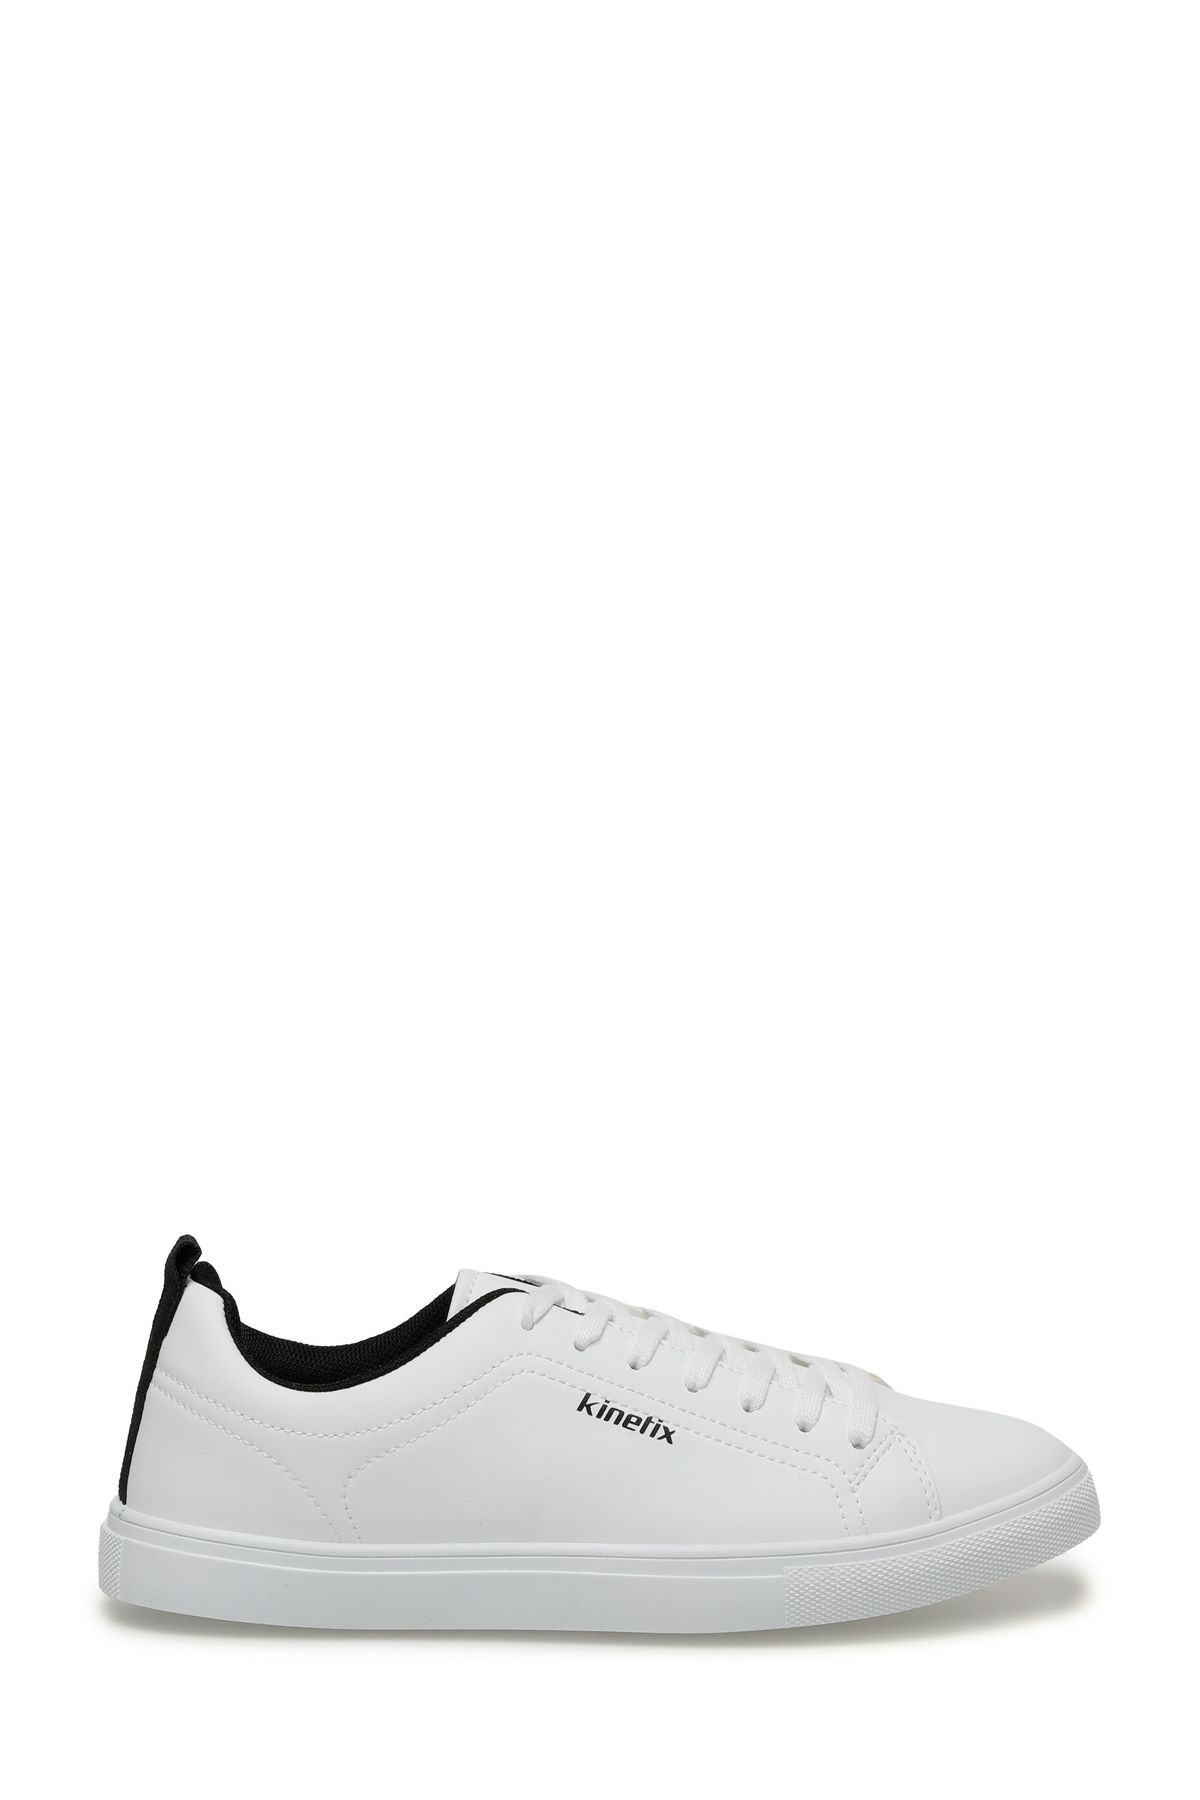 Kinetix 4M Snape 4Fx Beyaz Erkek Sneaker Ayakkabı